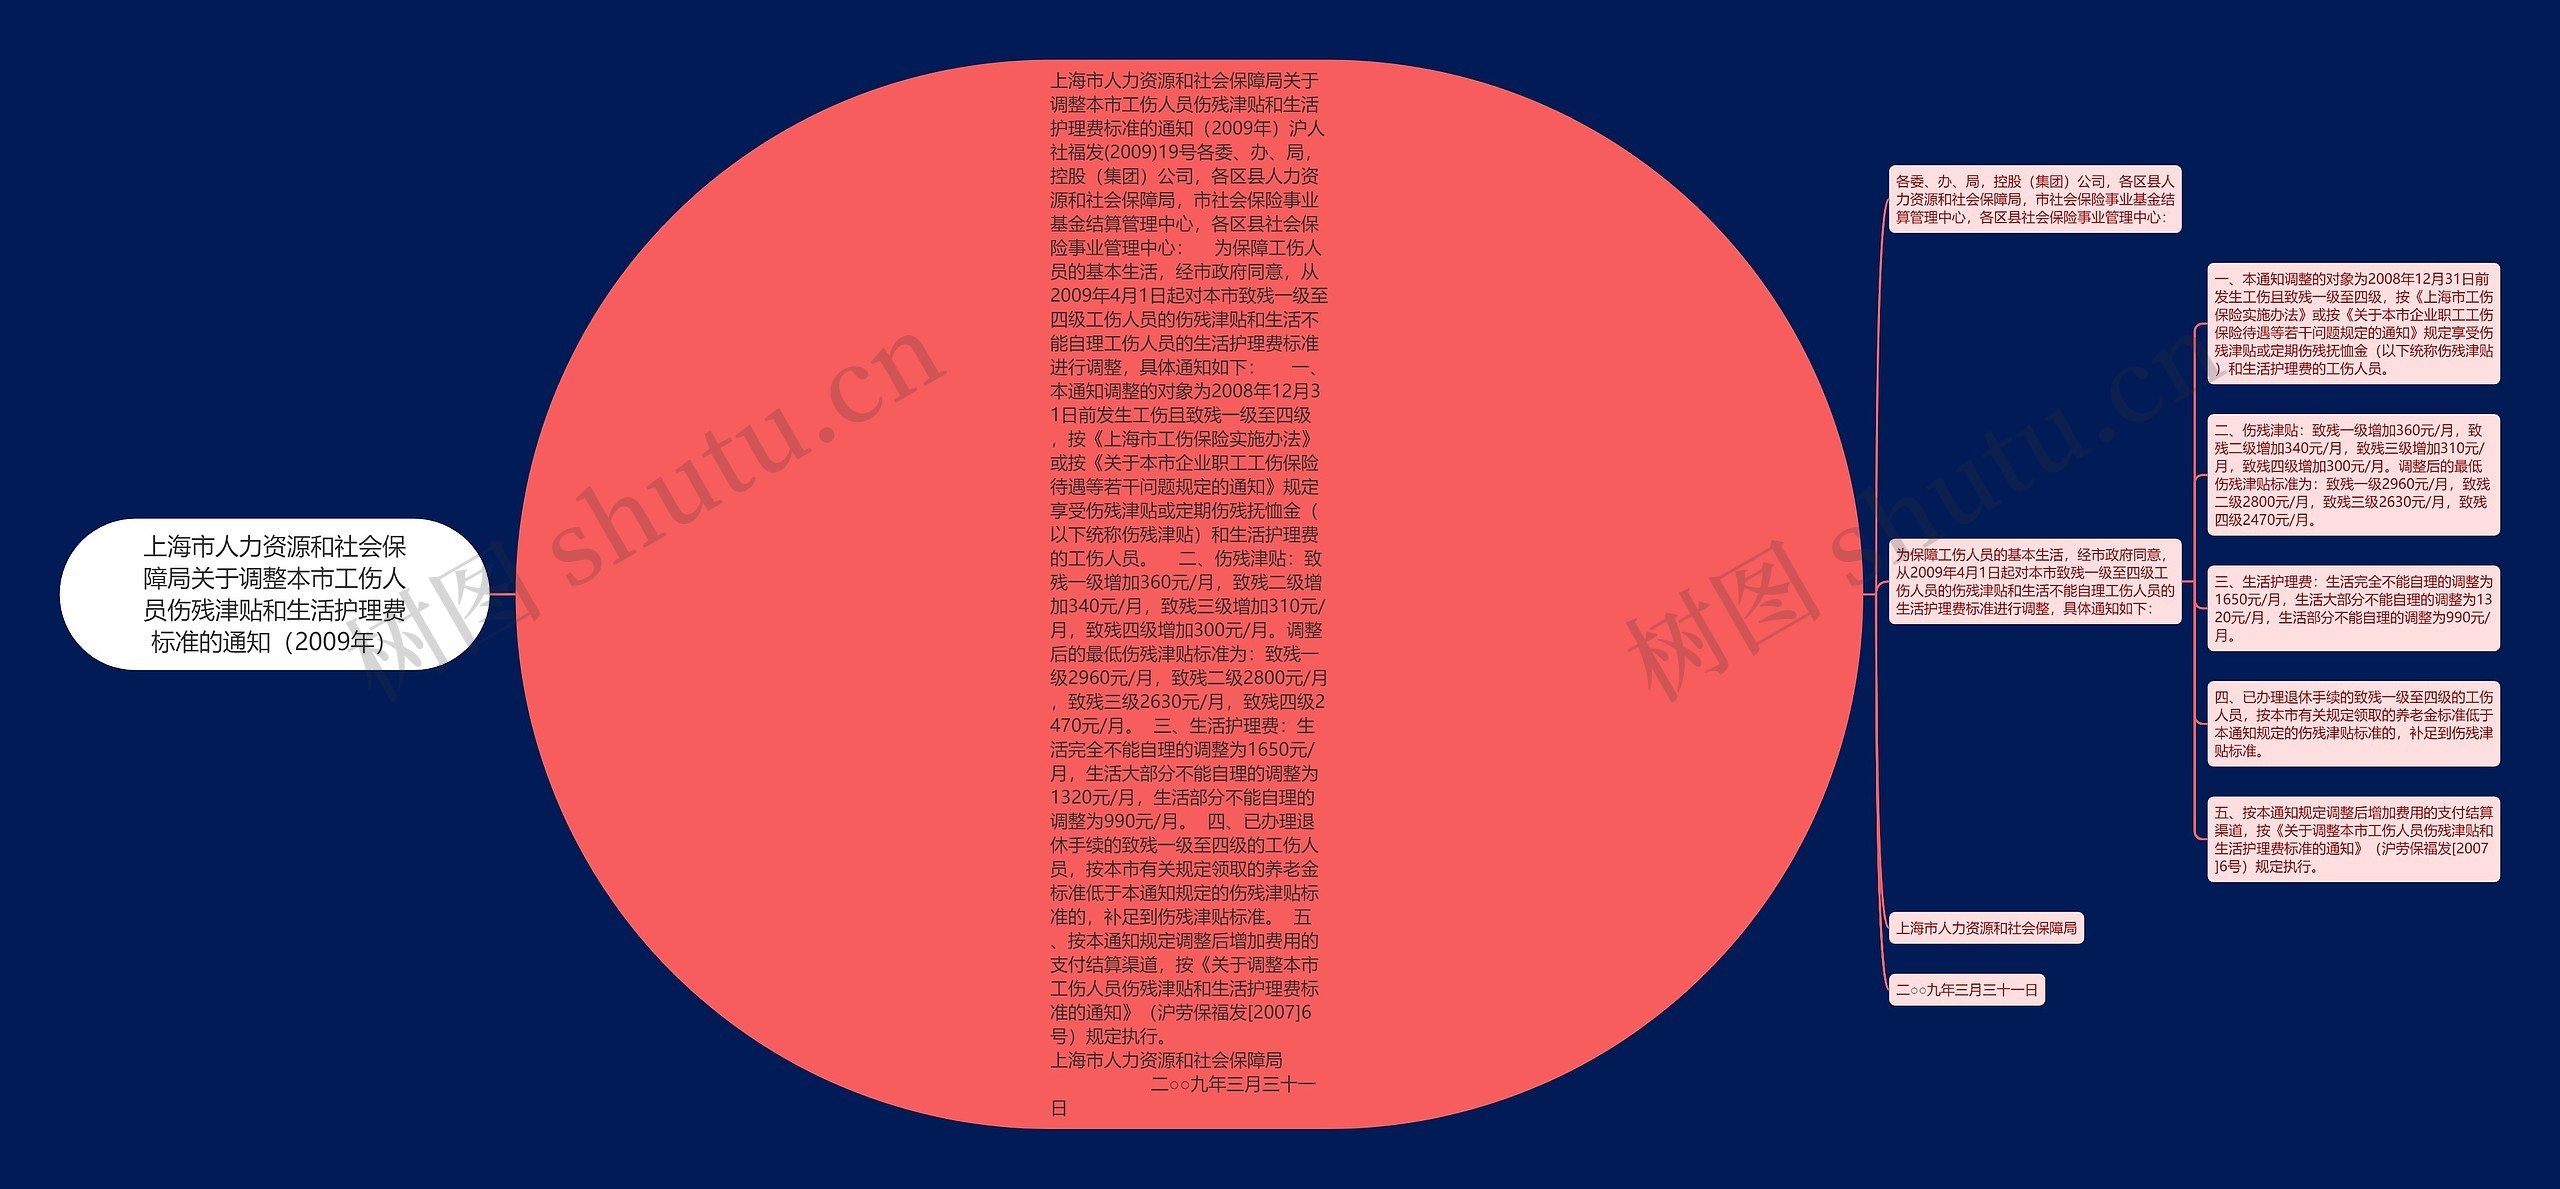 上海市人力资源和社会保障局关于调整本市工伤人员伤残津贴和生活护理费标准的通知（2009年）思维导图